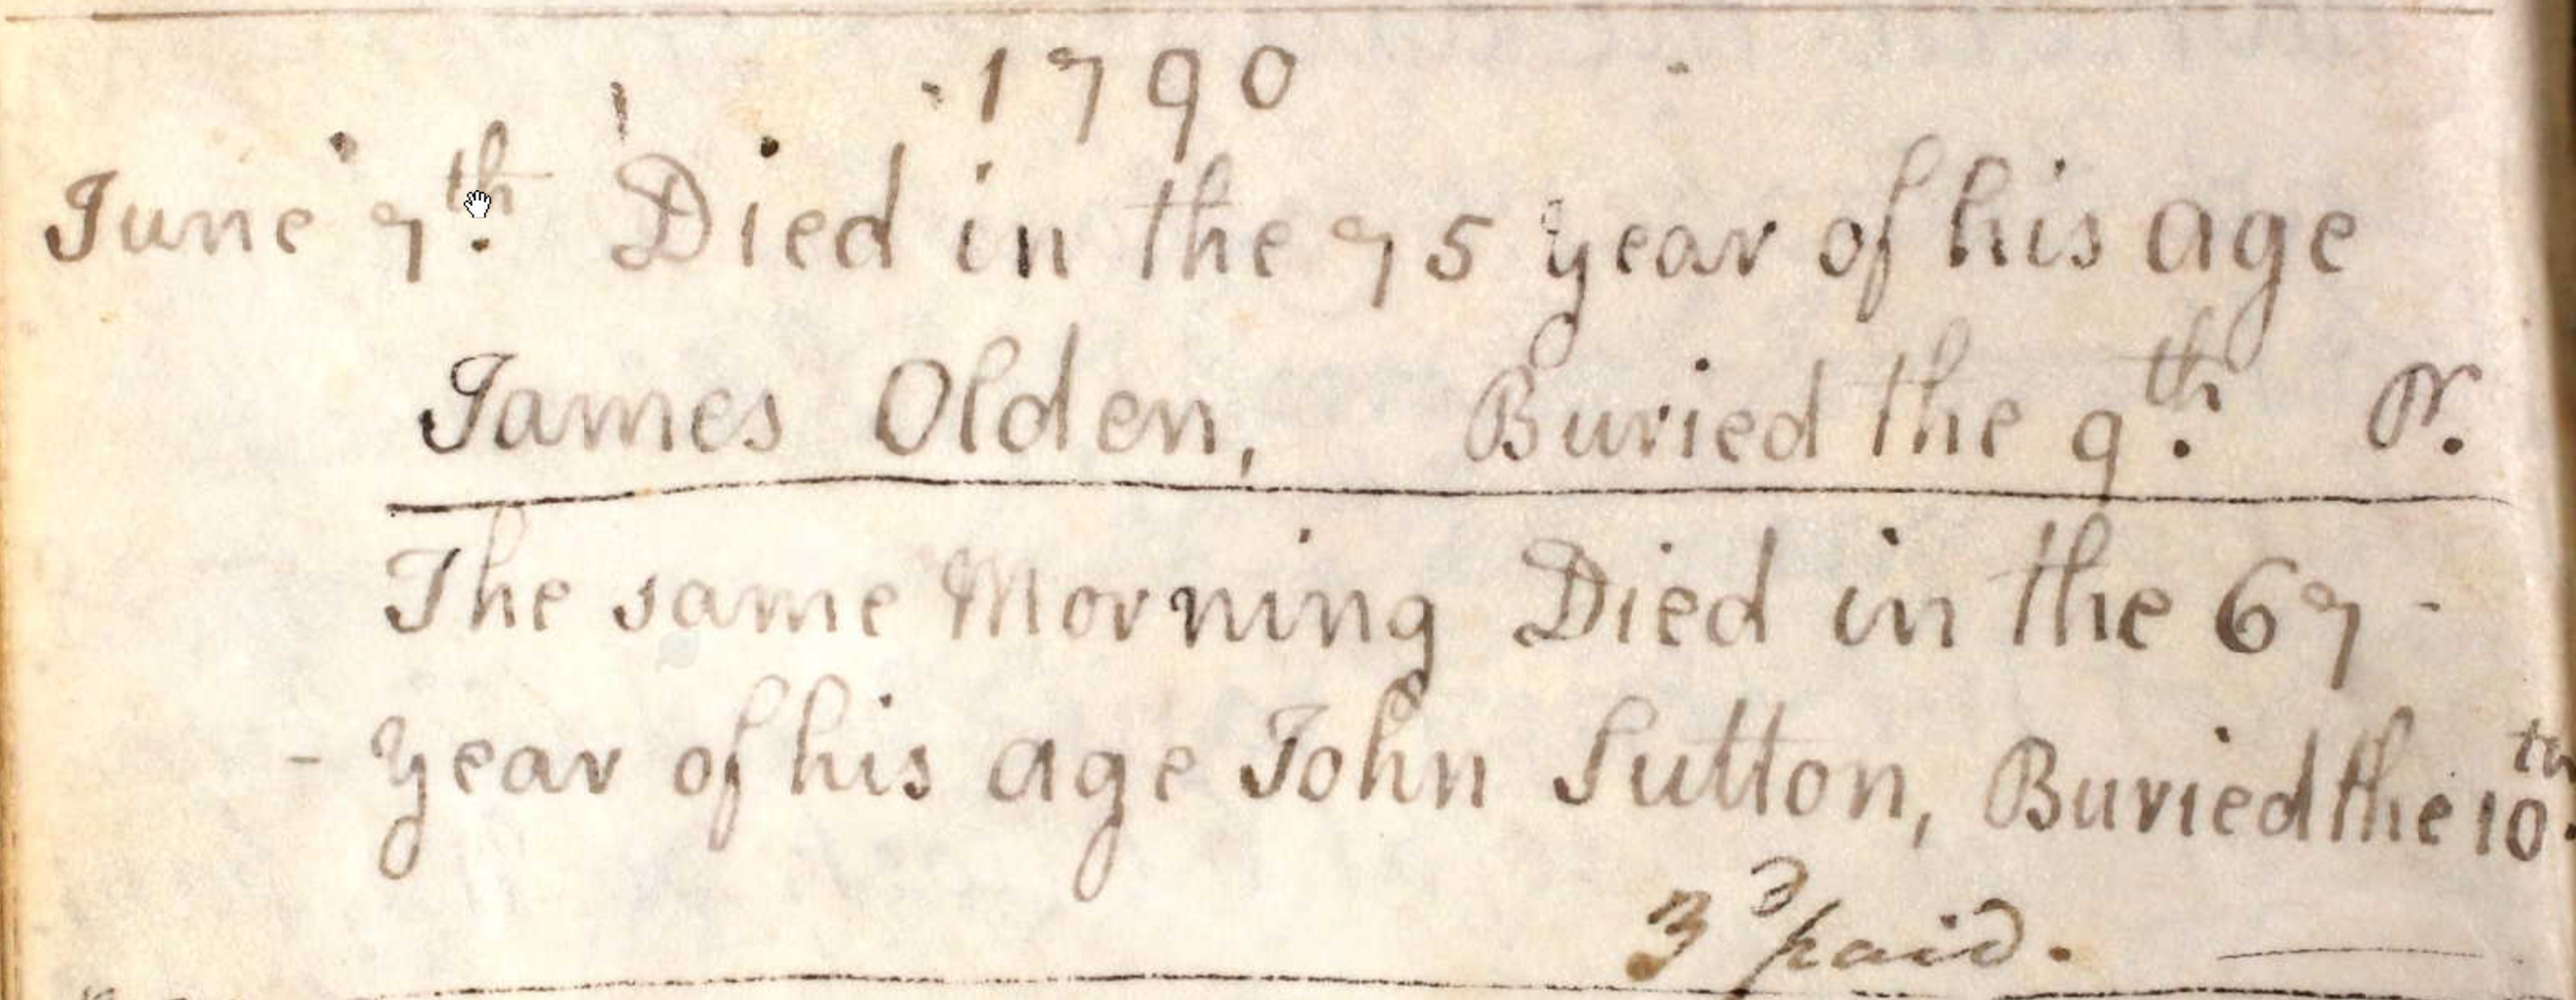 Figure 5: Burial Register Entry for John Sutton